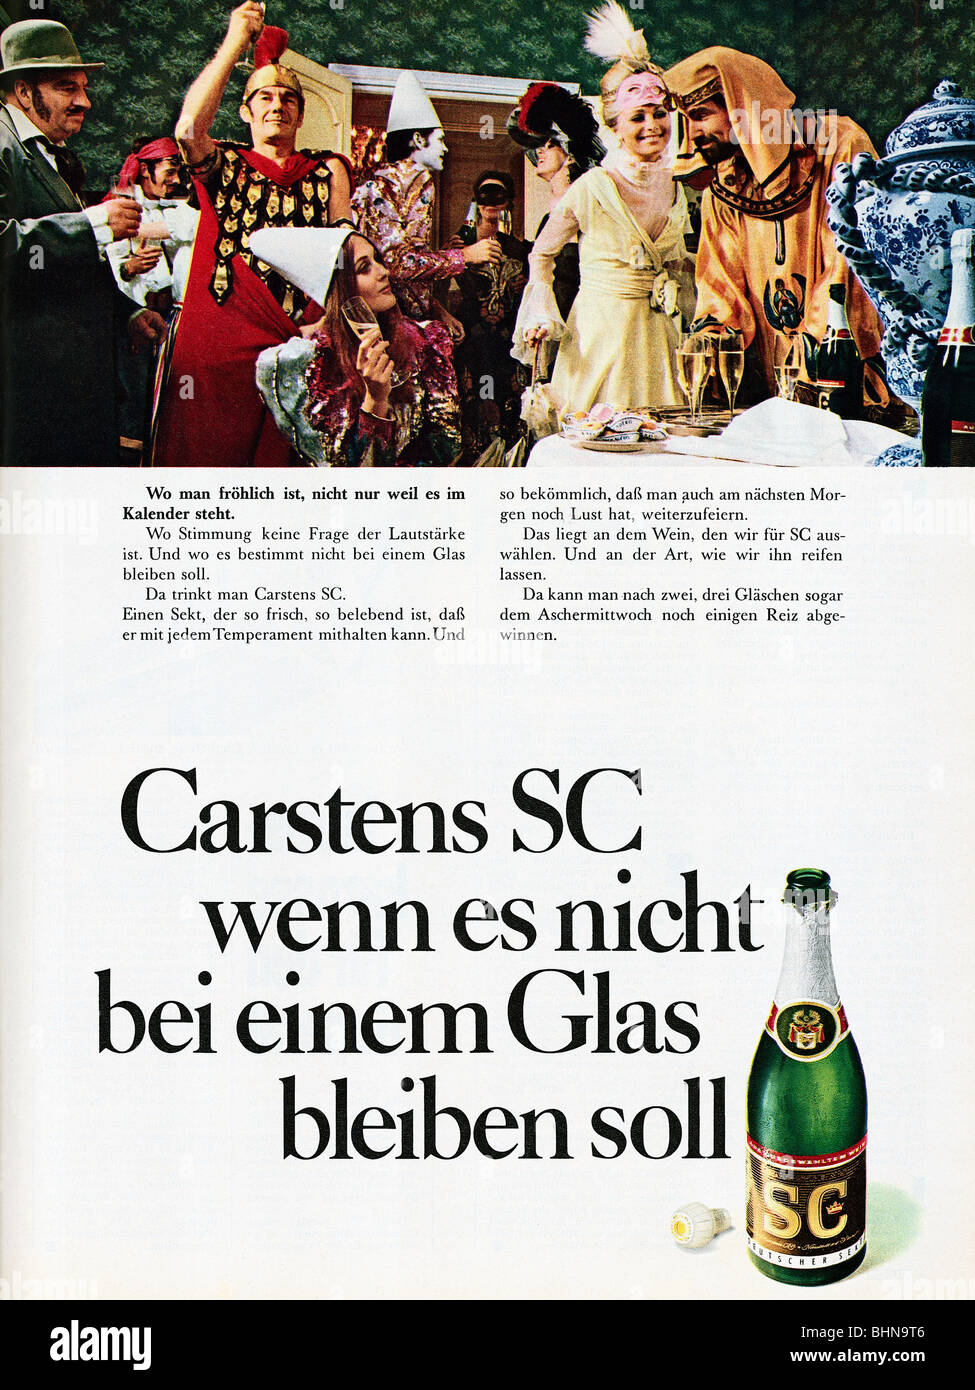 Werbung, Getränke, Sekt, Carstens SC "WENN es not at einem Glas bleichen soll", Werbung, "Quick", Nr. 7, 12.2.1969, Stockfoto